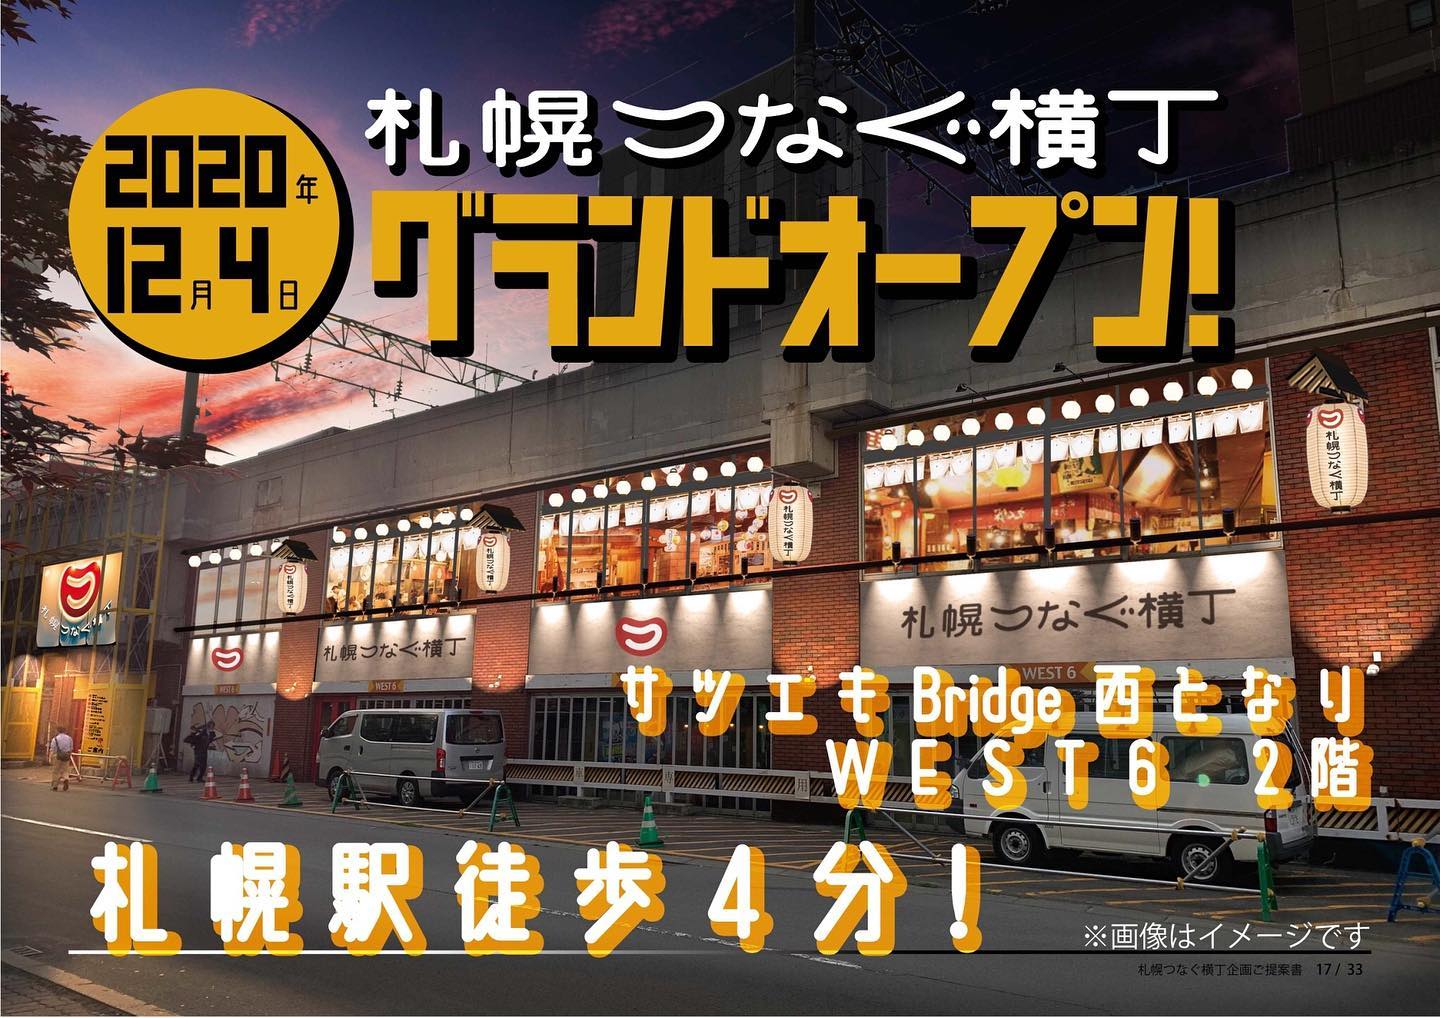 札幌つなぐ横丁 札幌駅西エリアに15店舗350席の飲み屋横丁が12月4日オープン すすきのへ行こう